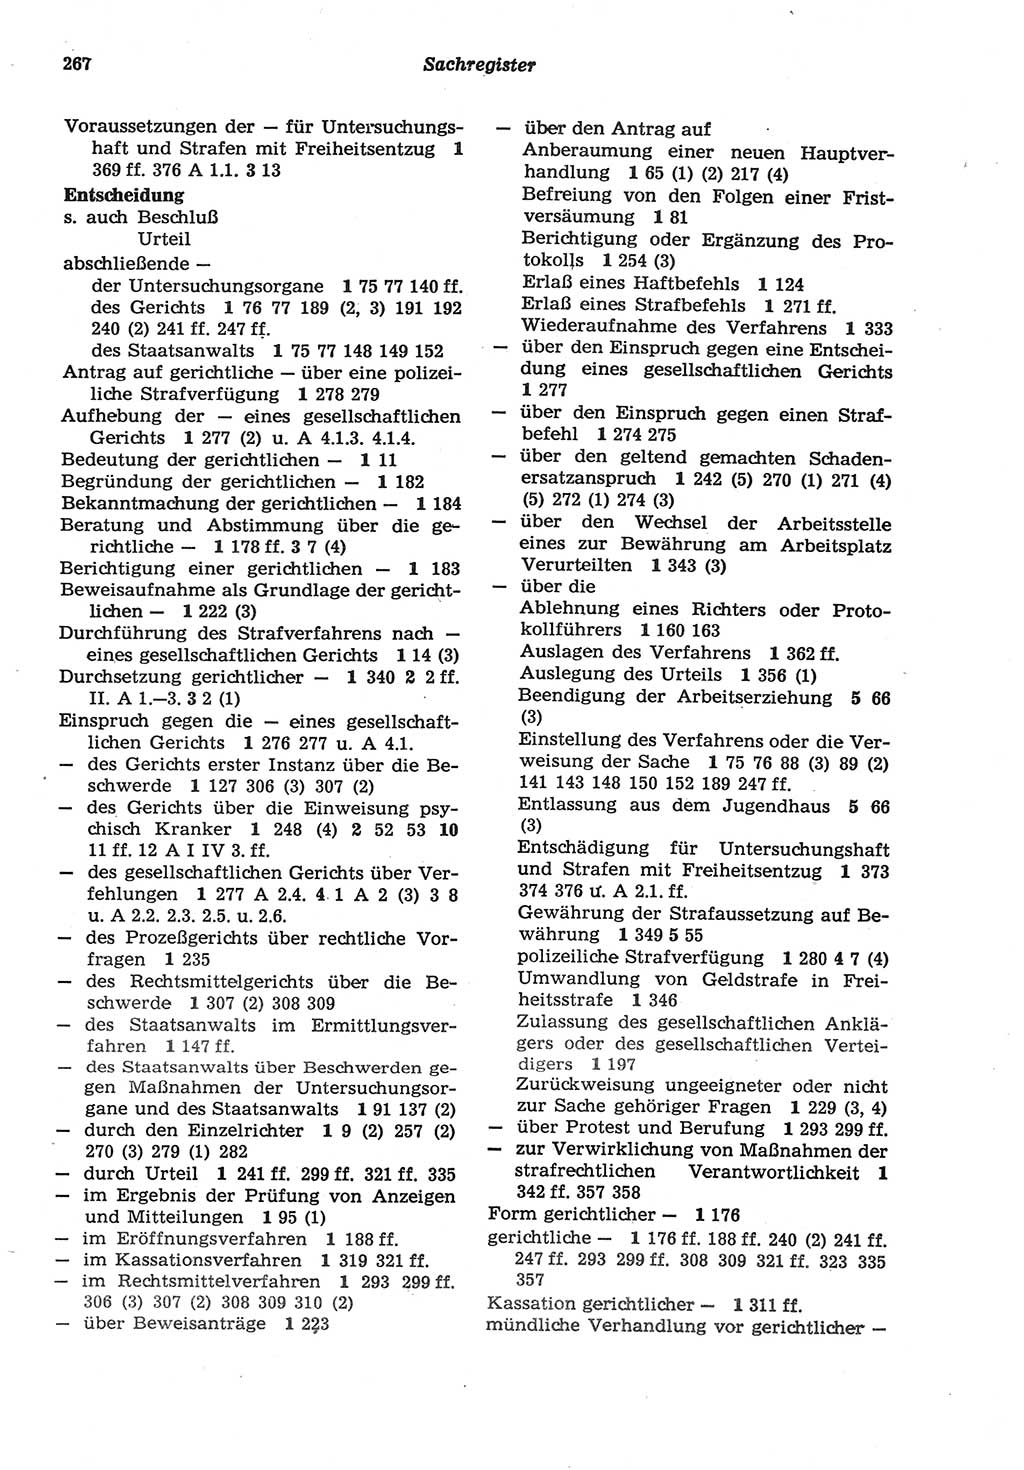 Strafprozeßordnung (StPO) der Deutschen Demokratischen Republik (DDR) sowie angrenzende Gesetze und Bestimmungen 1977, Seite 267 (StPO DDR Ges. Best. 1977, S. 267)